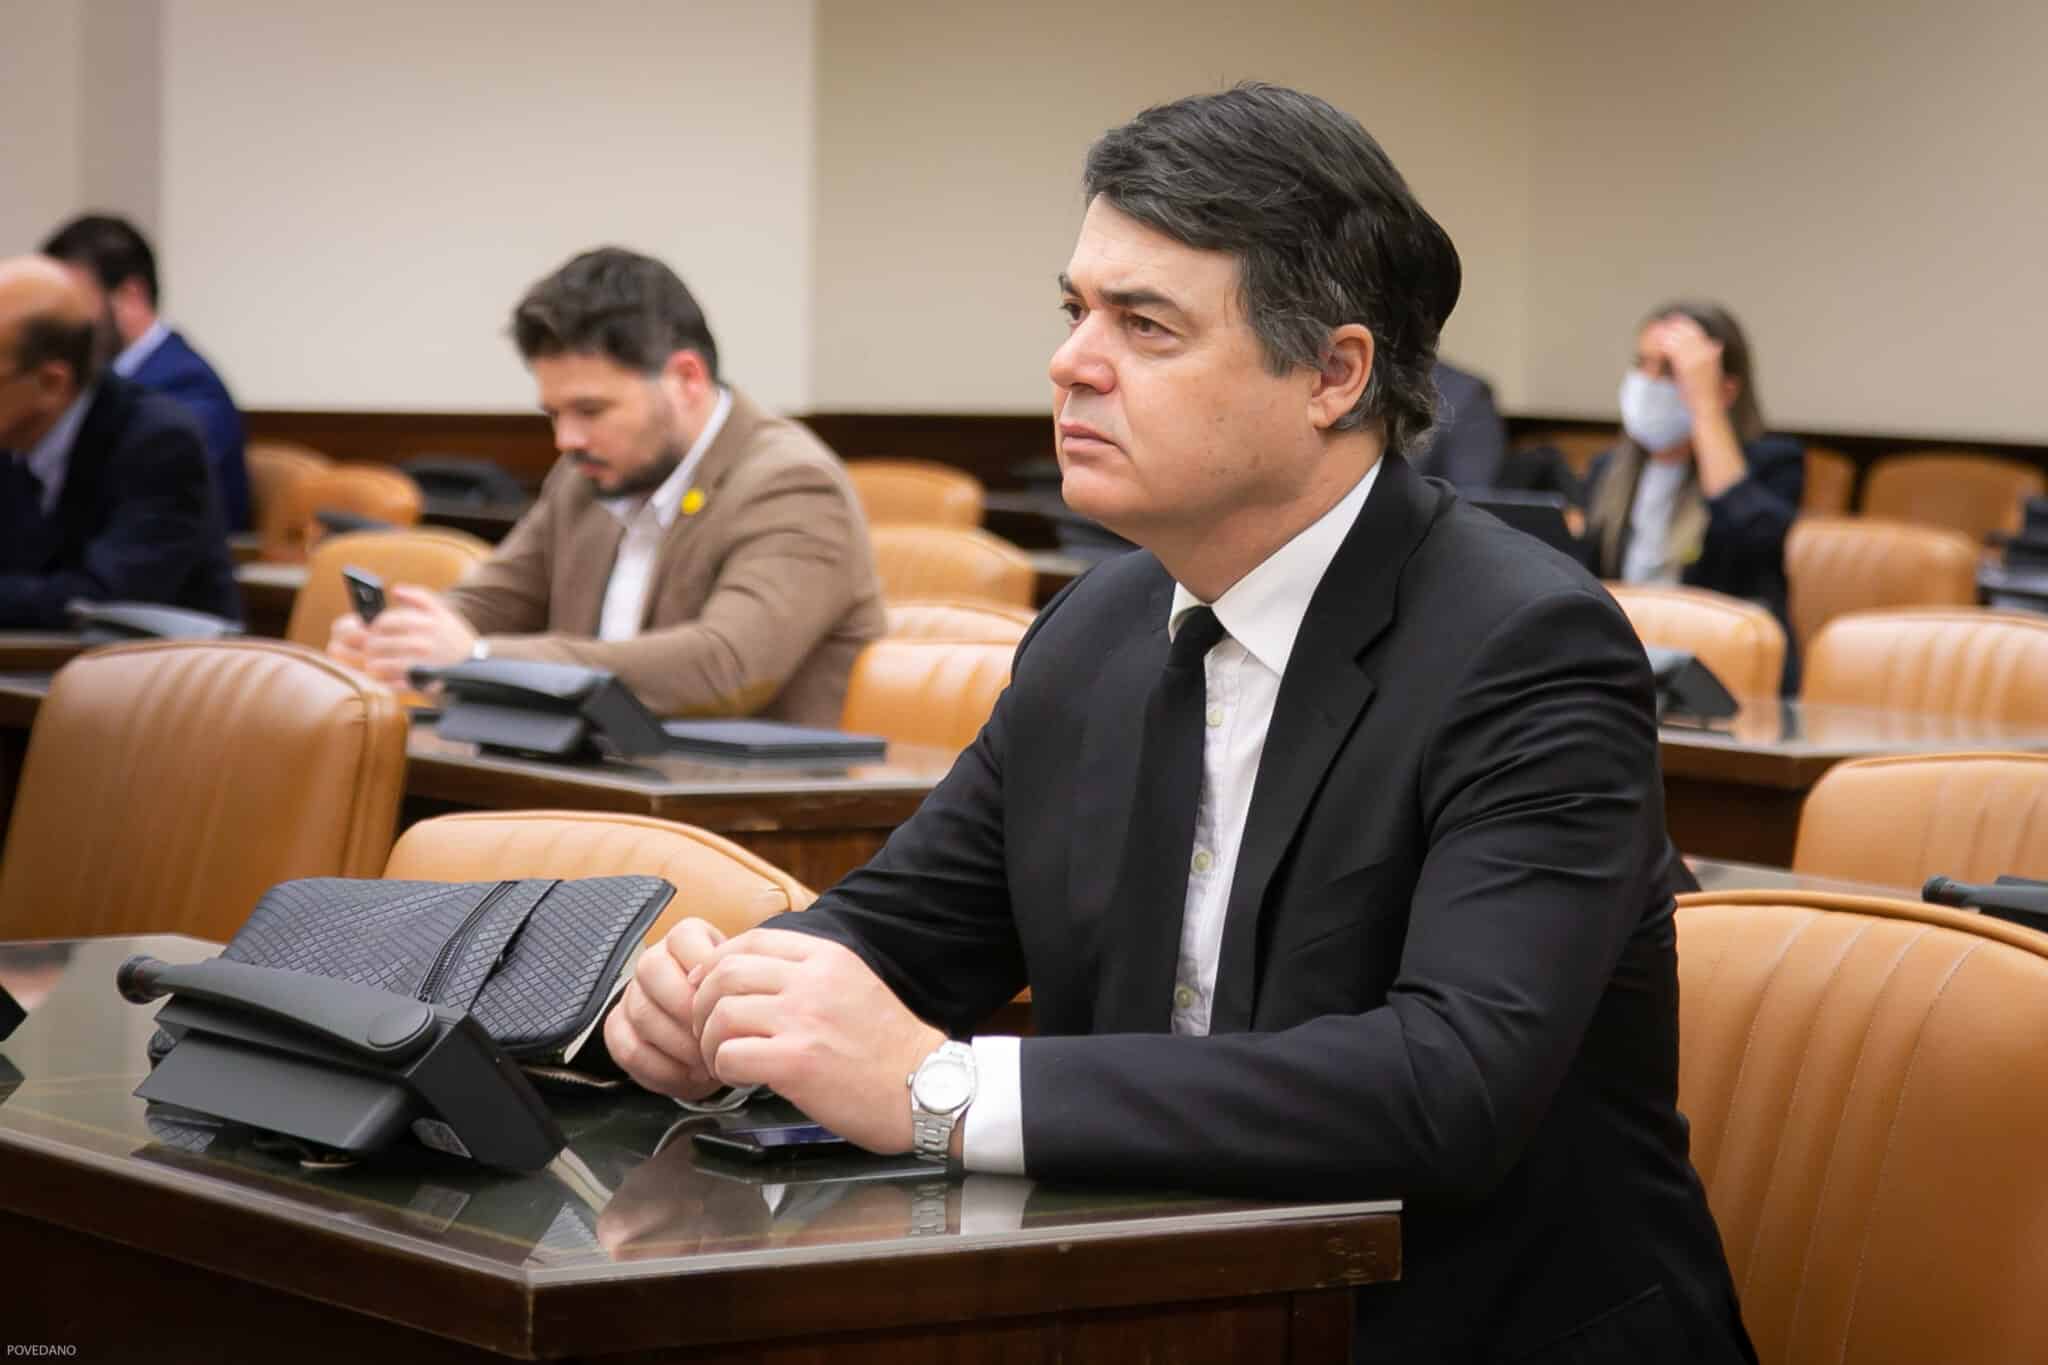 El diputado del PP Carlos Rojas durante una comparecencia del ministro de Interior en el Congreso de los Diputados.